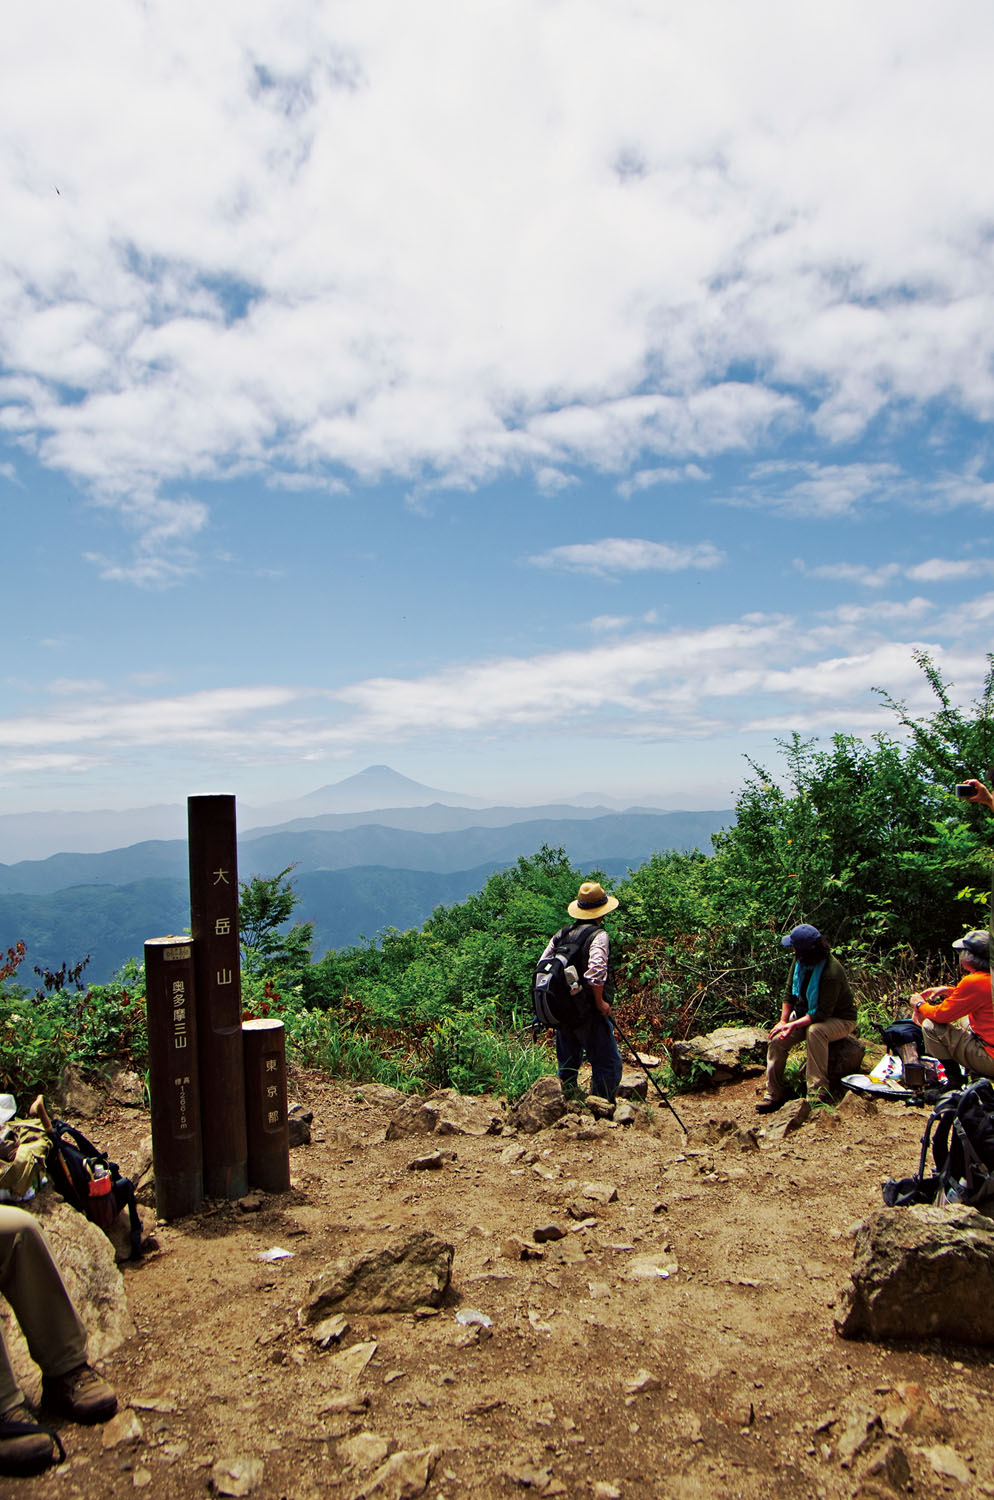 夏場の大岳山山頂でも富士山が見えるときも。ただし雪のかぶっていない富士山になる。